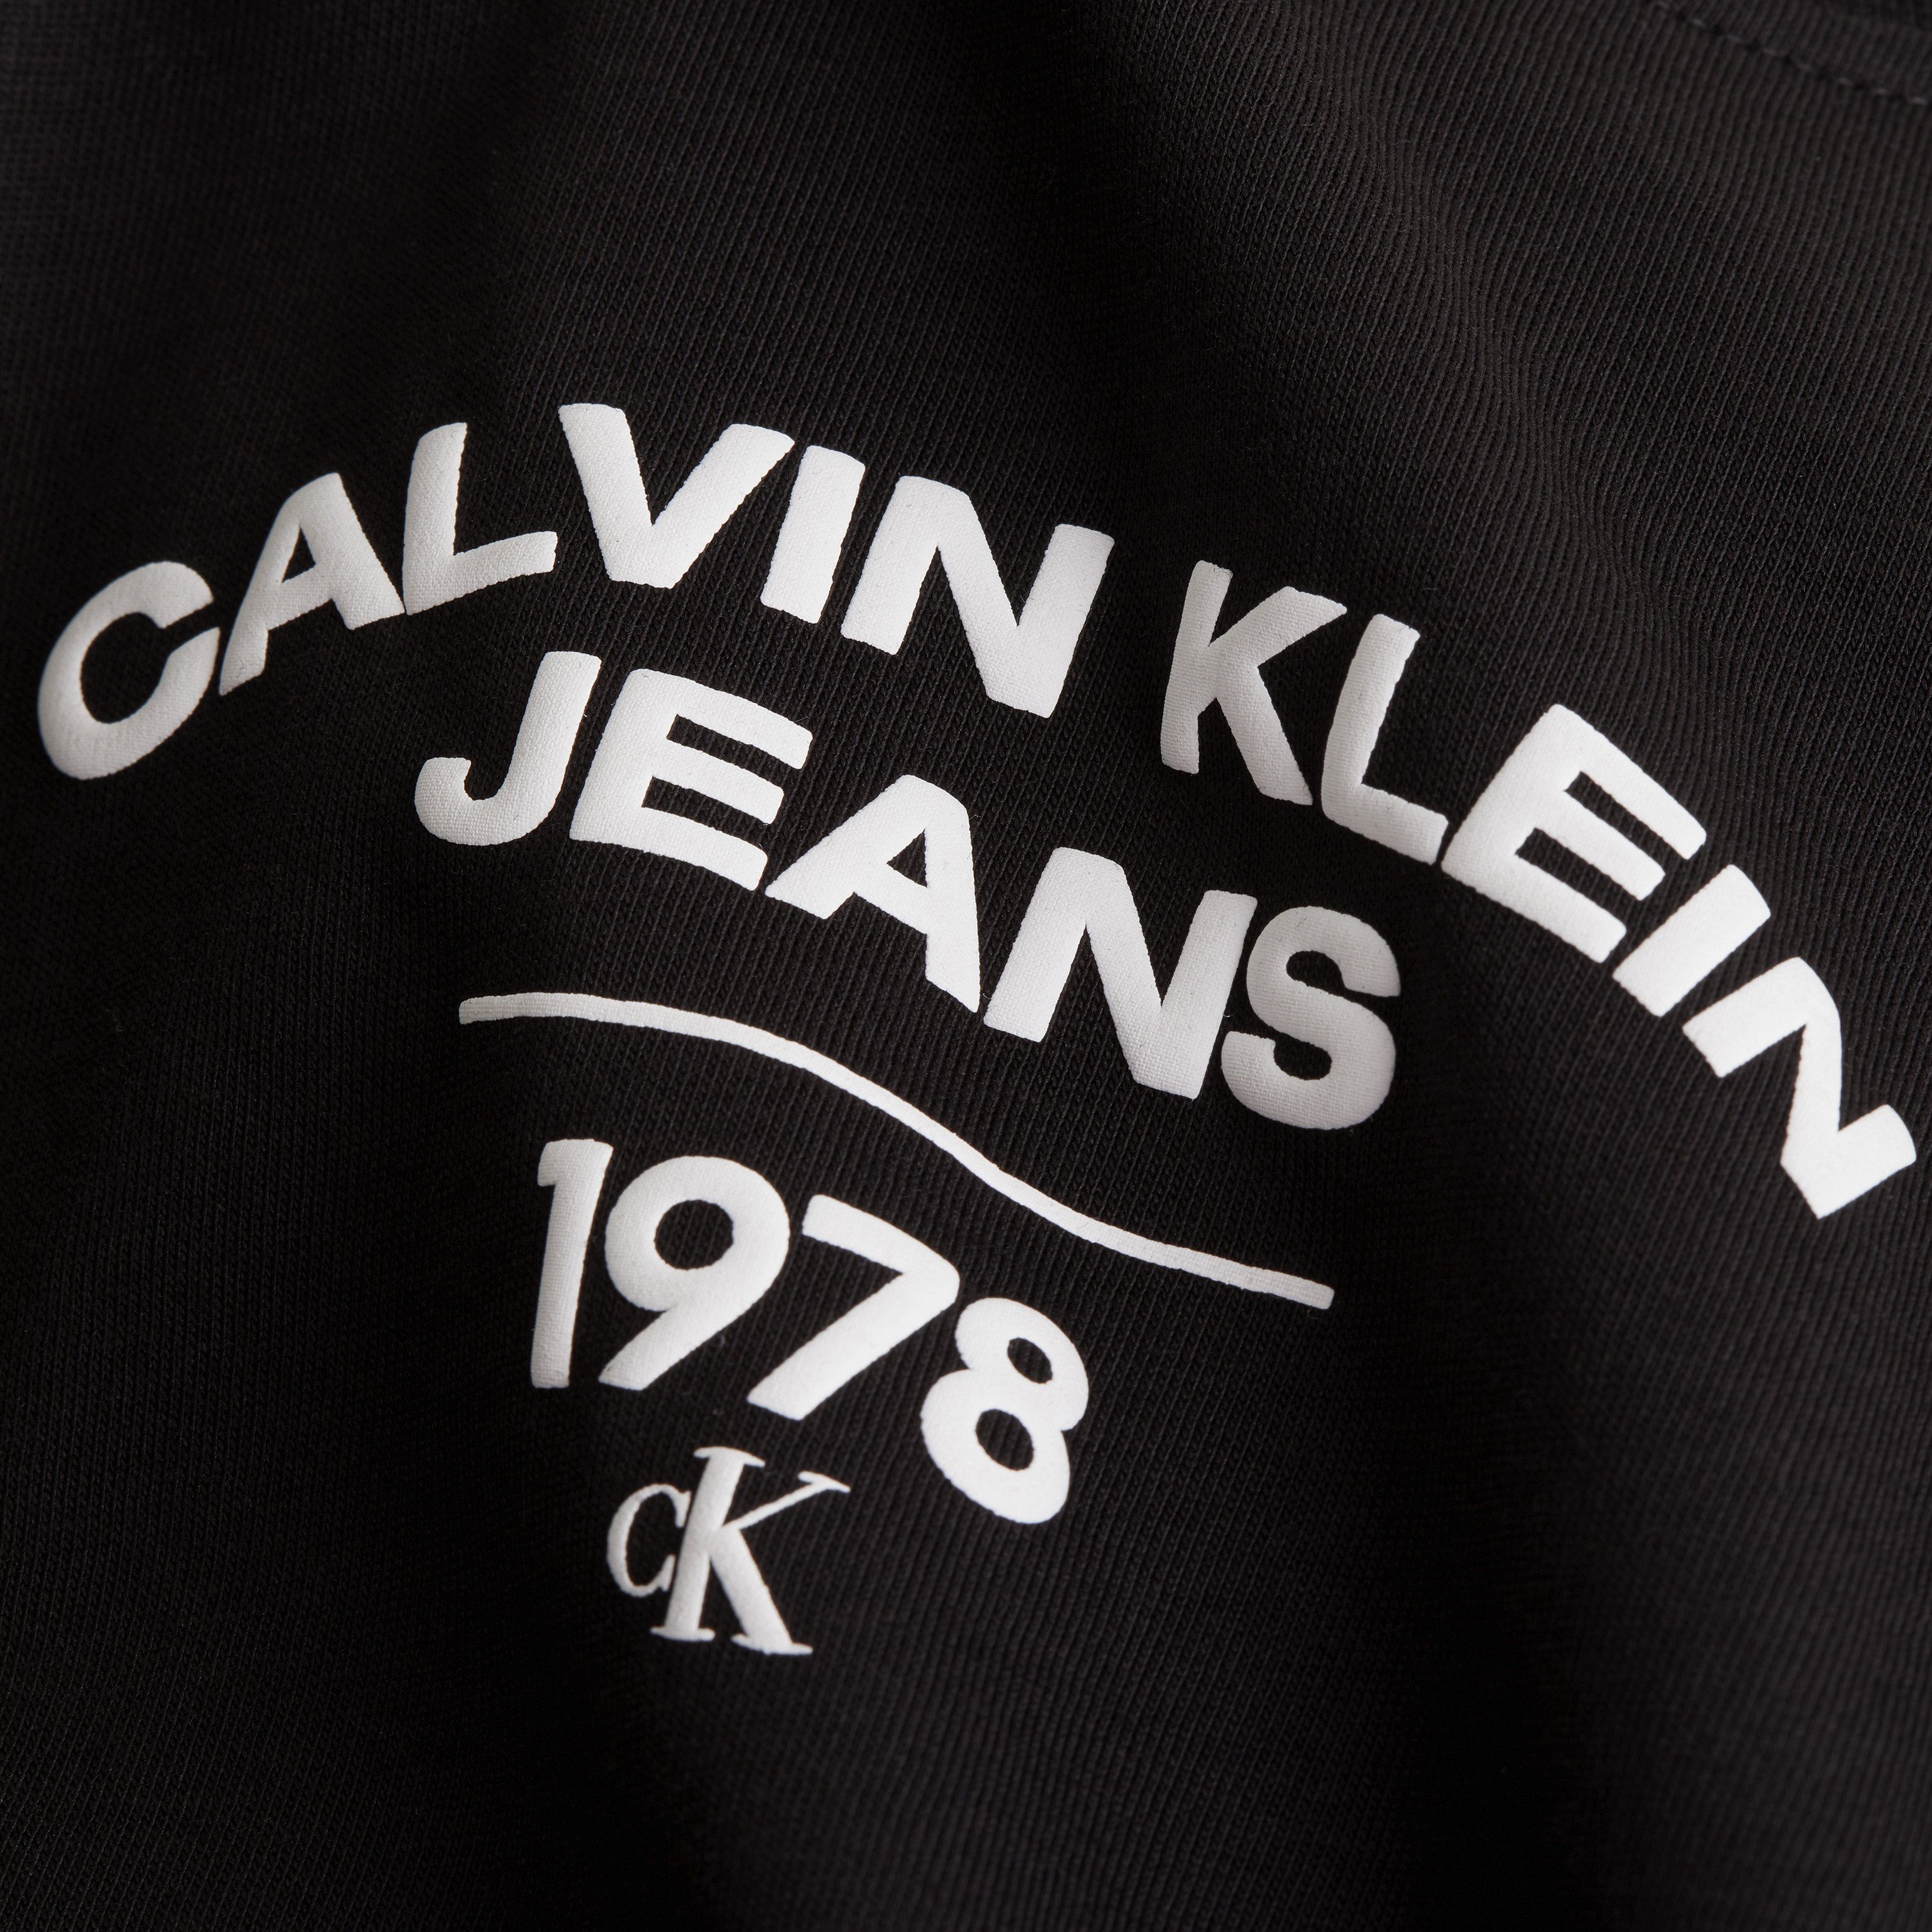 Plus Ck PLUS VARISTY TEE LOGO Klein Black Calvin Jeans REGULAR T-Shirt